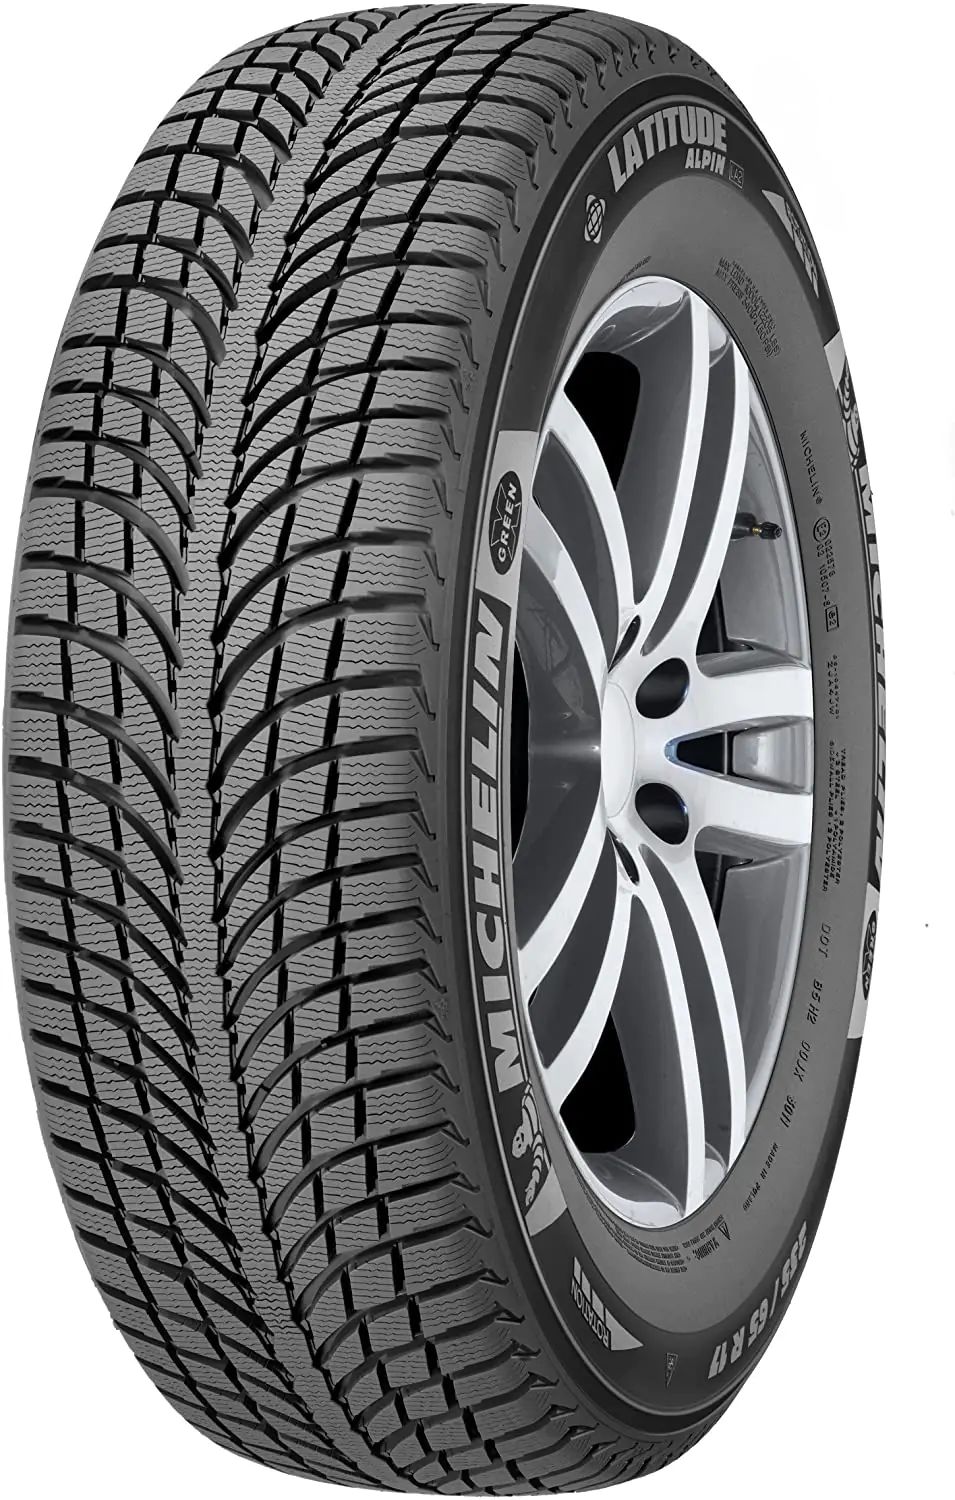 Michelin Michelin 255/45 R20 101V Latitudealpinla2 AO pneumatici nuovi Invernale 